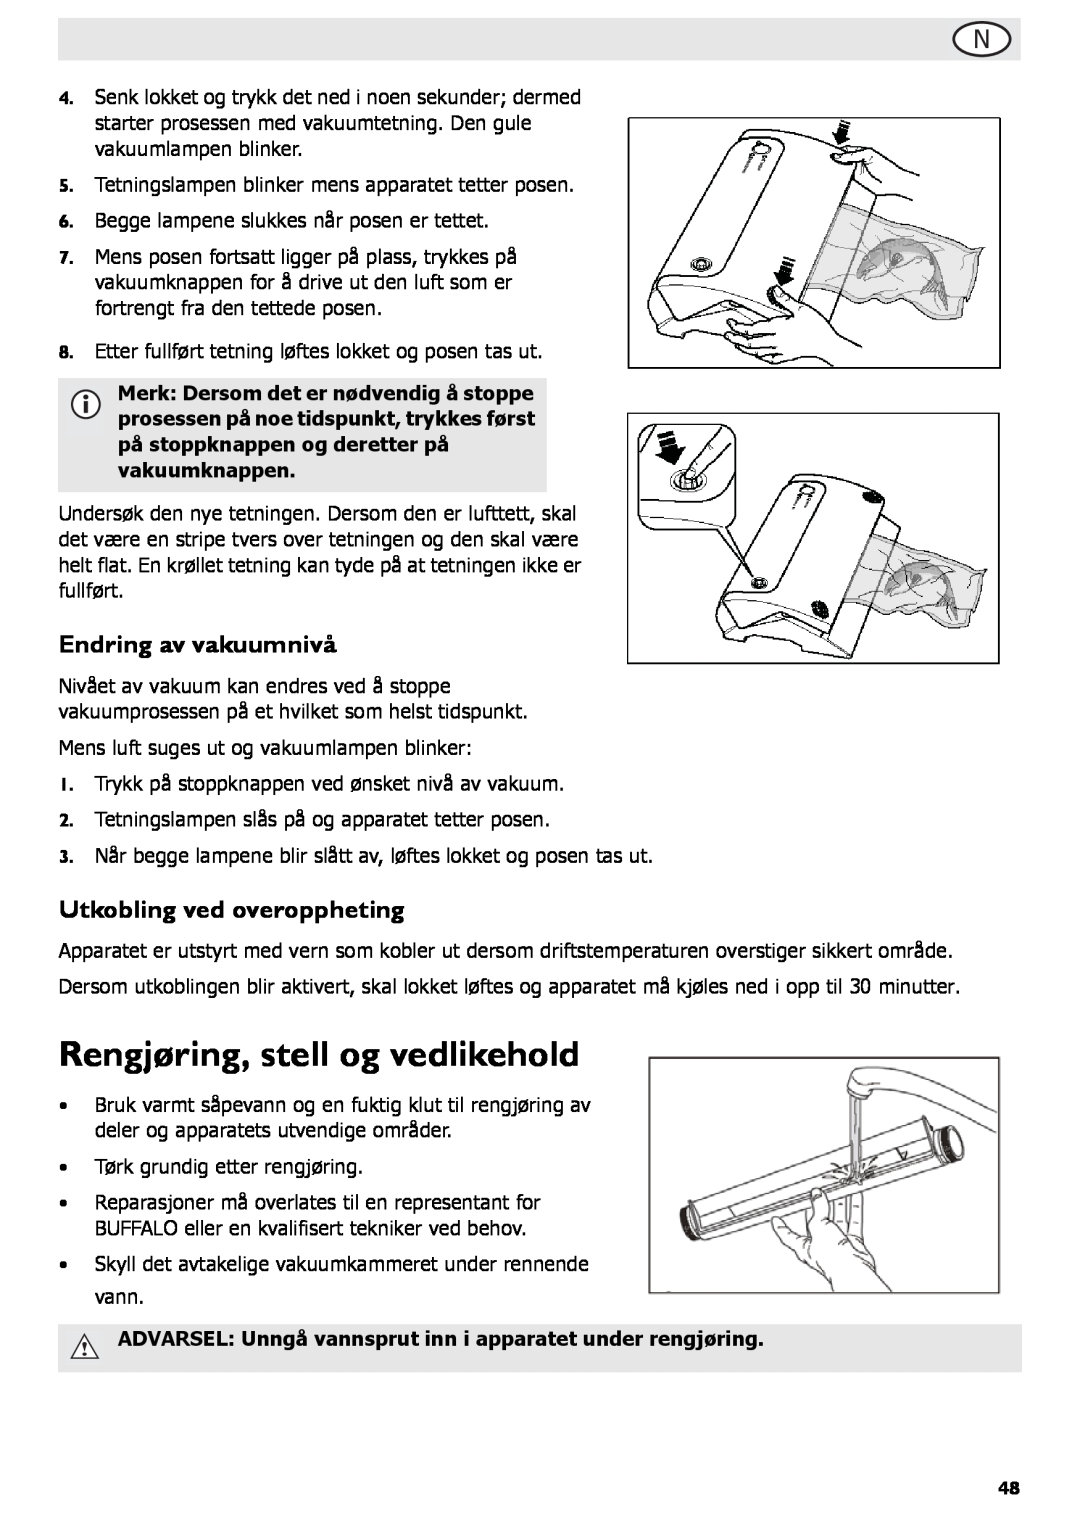 Buffalo Tools S097 instruction manual Rengjøring, stell og vedlikehold, Endring av vakuumnivå, Utkobling ved overoppheting 